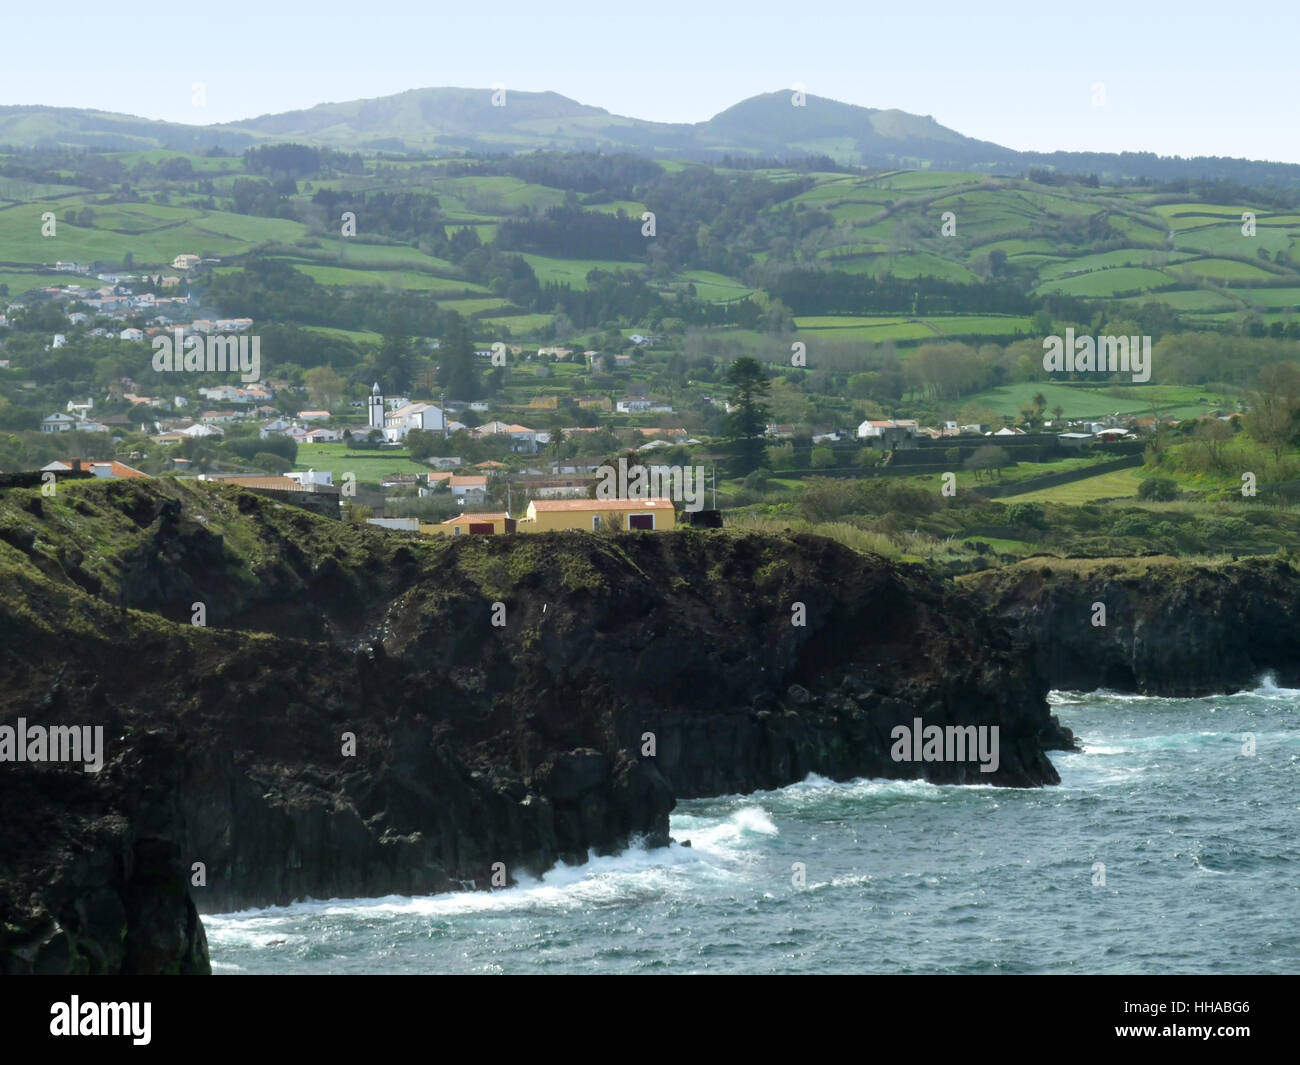 Paysages côtières rocheuses à l'île de São Miguel, la plus grande île de l'archipel des Açores, un groupe d'îles volcanique situé au milieu de l'océan Atlantique Nord (Portugal) Banque D'Images